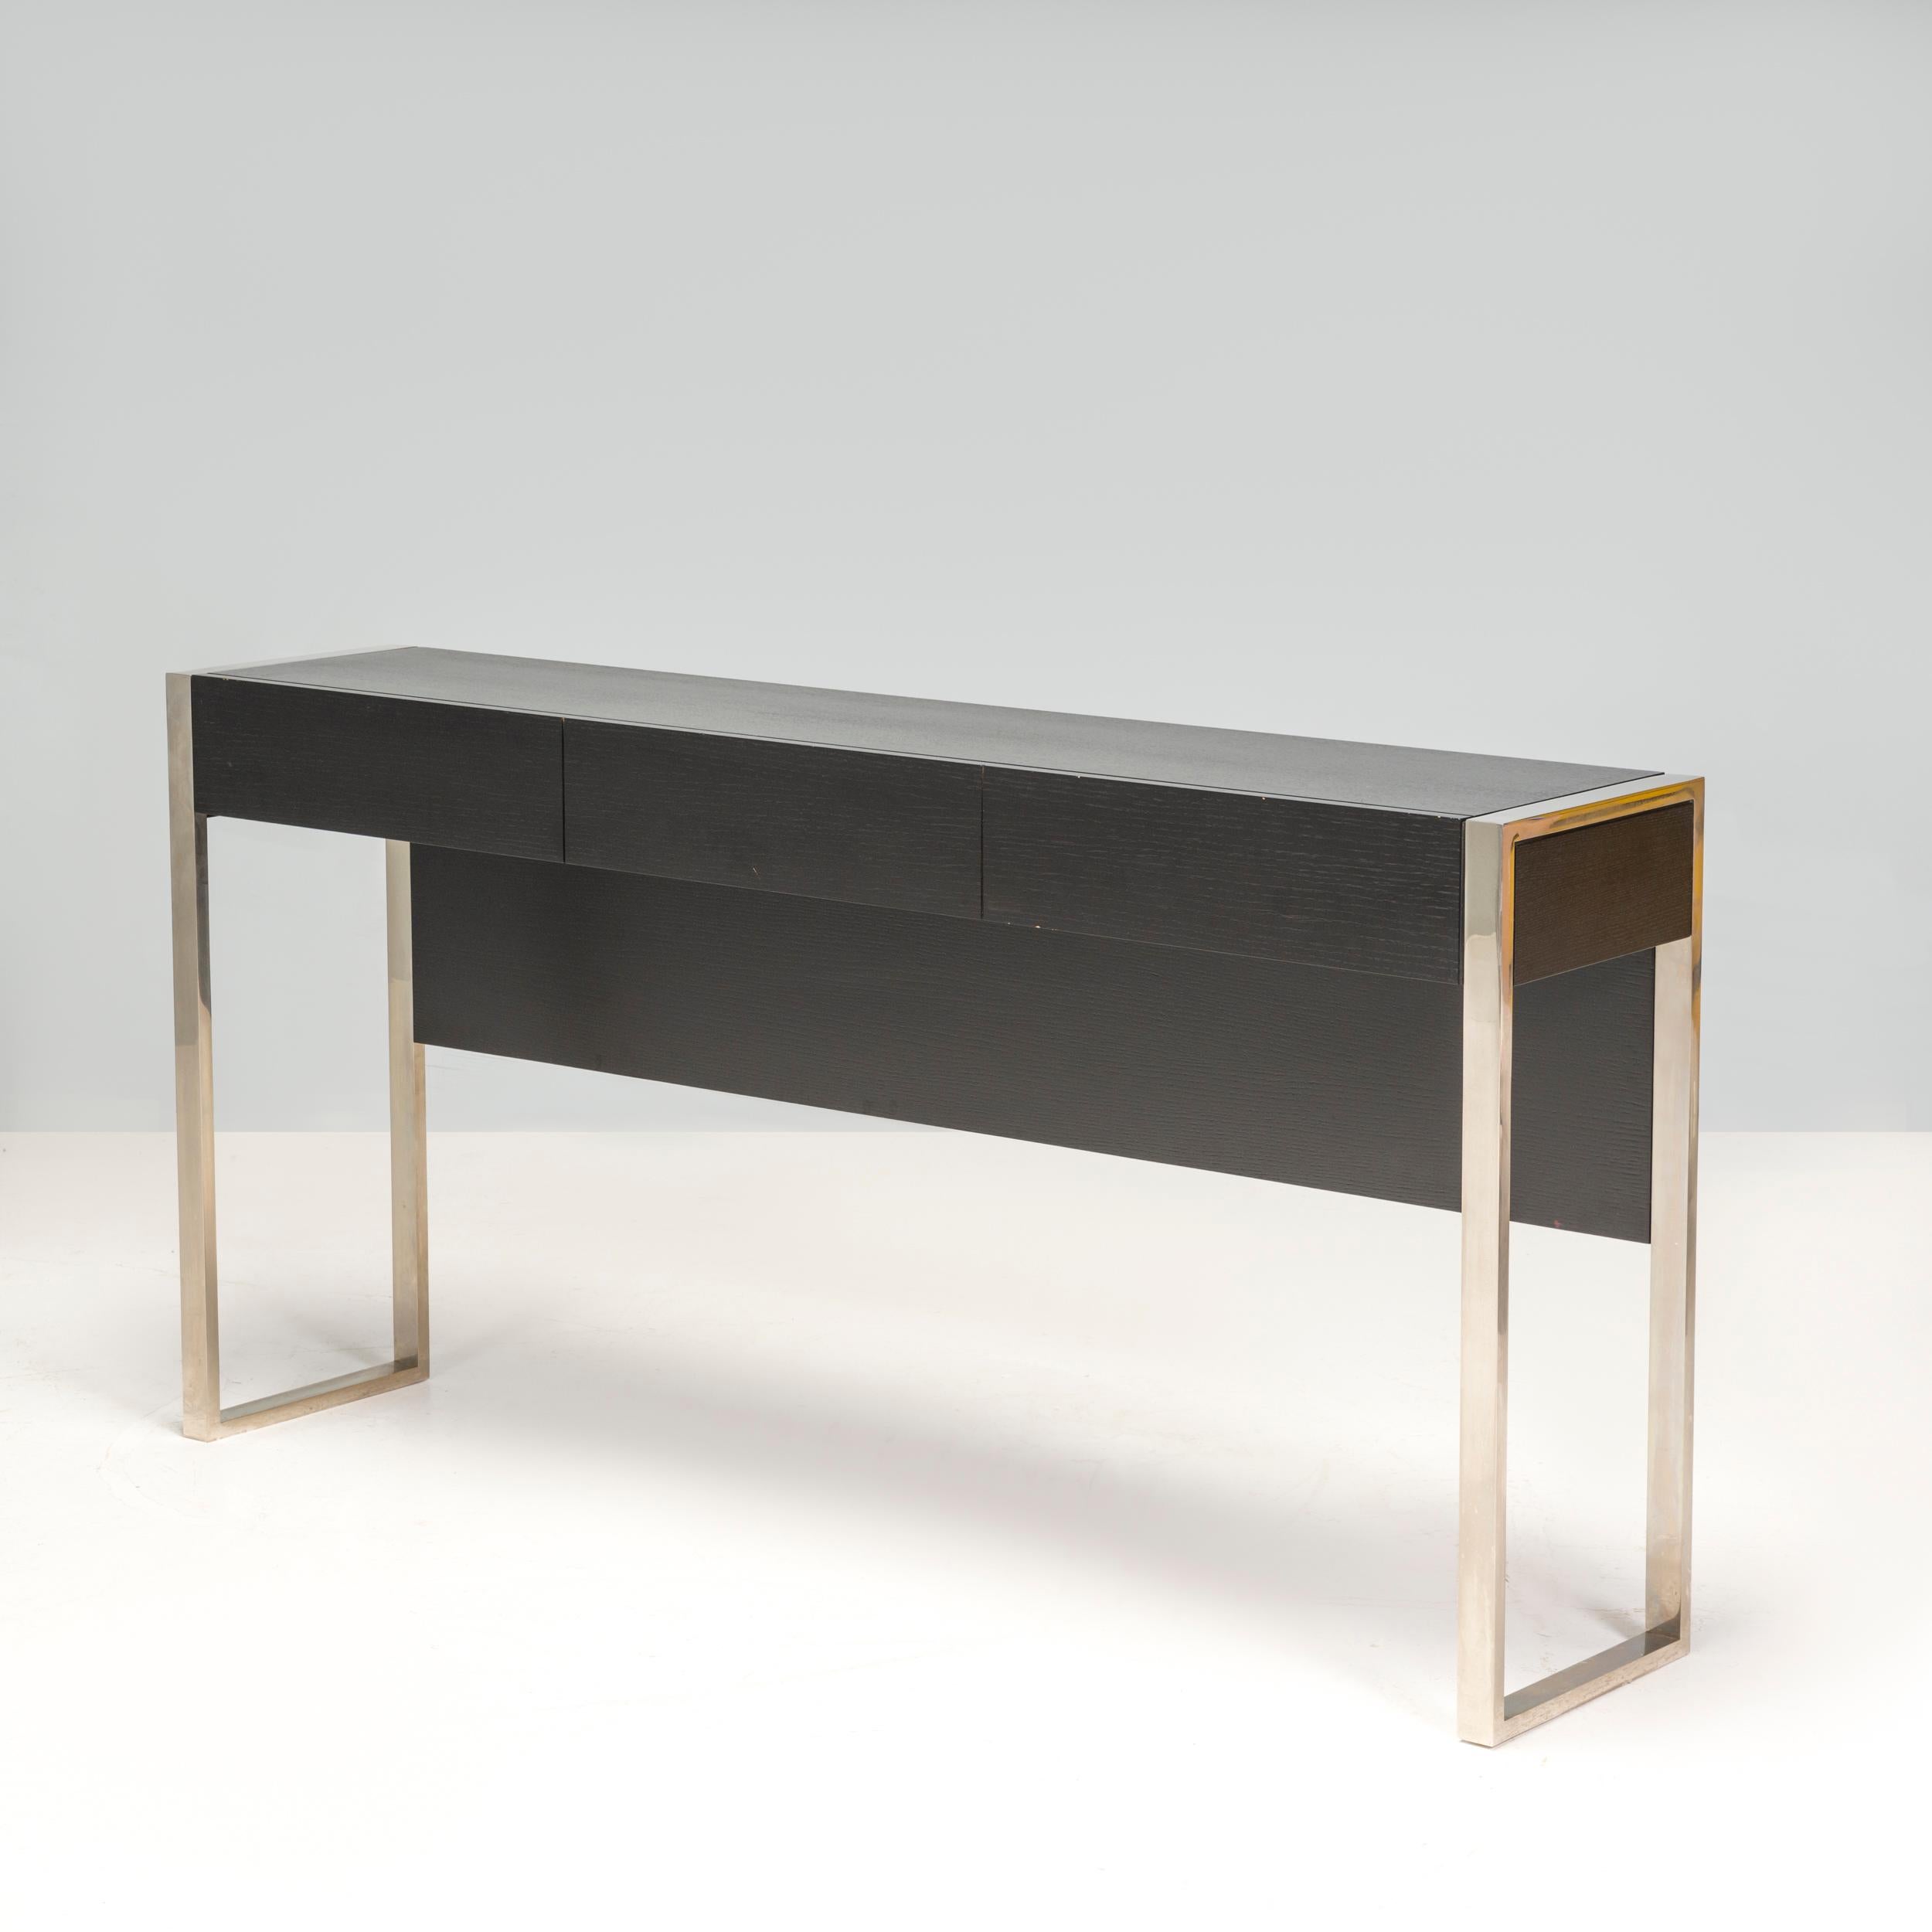 Dieser maßgefertigte Konsolentisch mit seiner modernen, minimalistischen Ästhetik besteht aus dunklem Holz und eleganten Metallbeinen, die einen kontrastreichen Abschluss bilden. Es gibt ein fesselndes Zusammenspiel von geometrischen Formen und